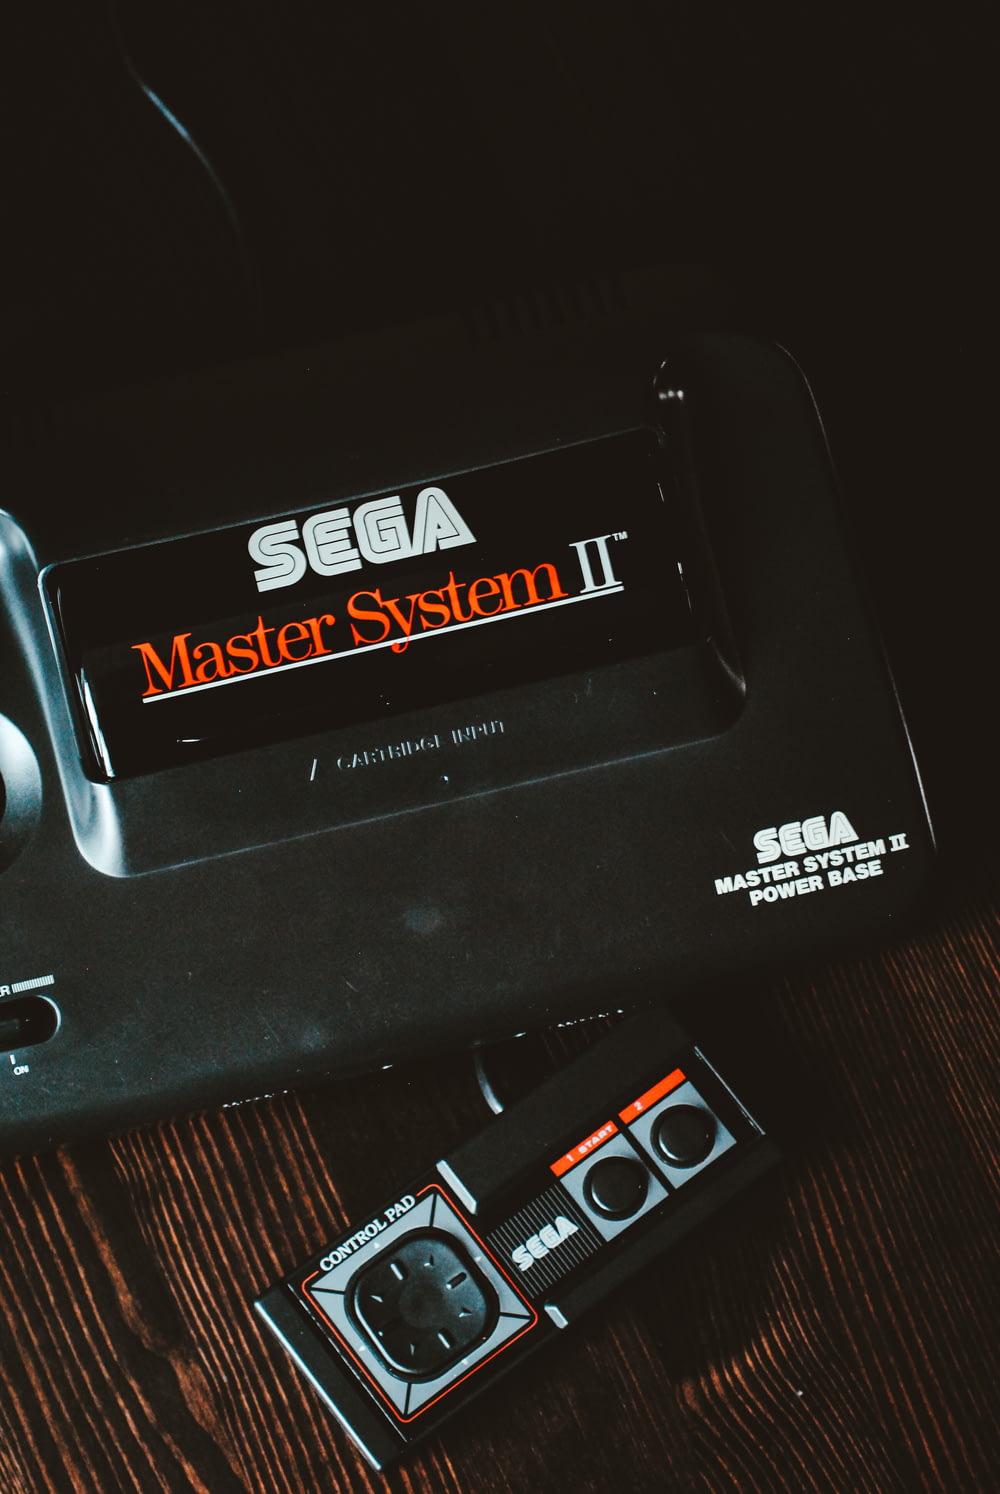 Appareil Sega Master System II noir sur surface en bois marron